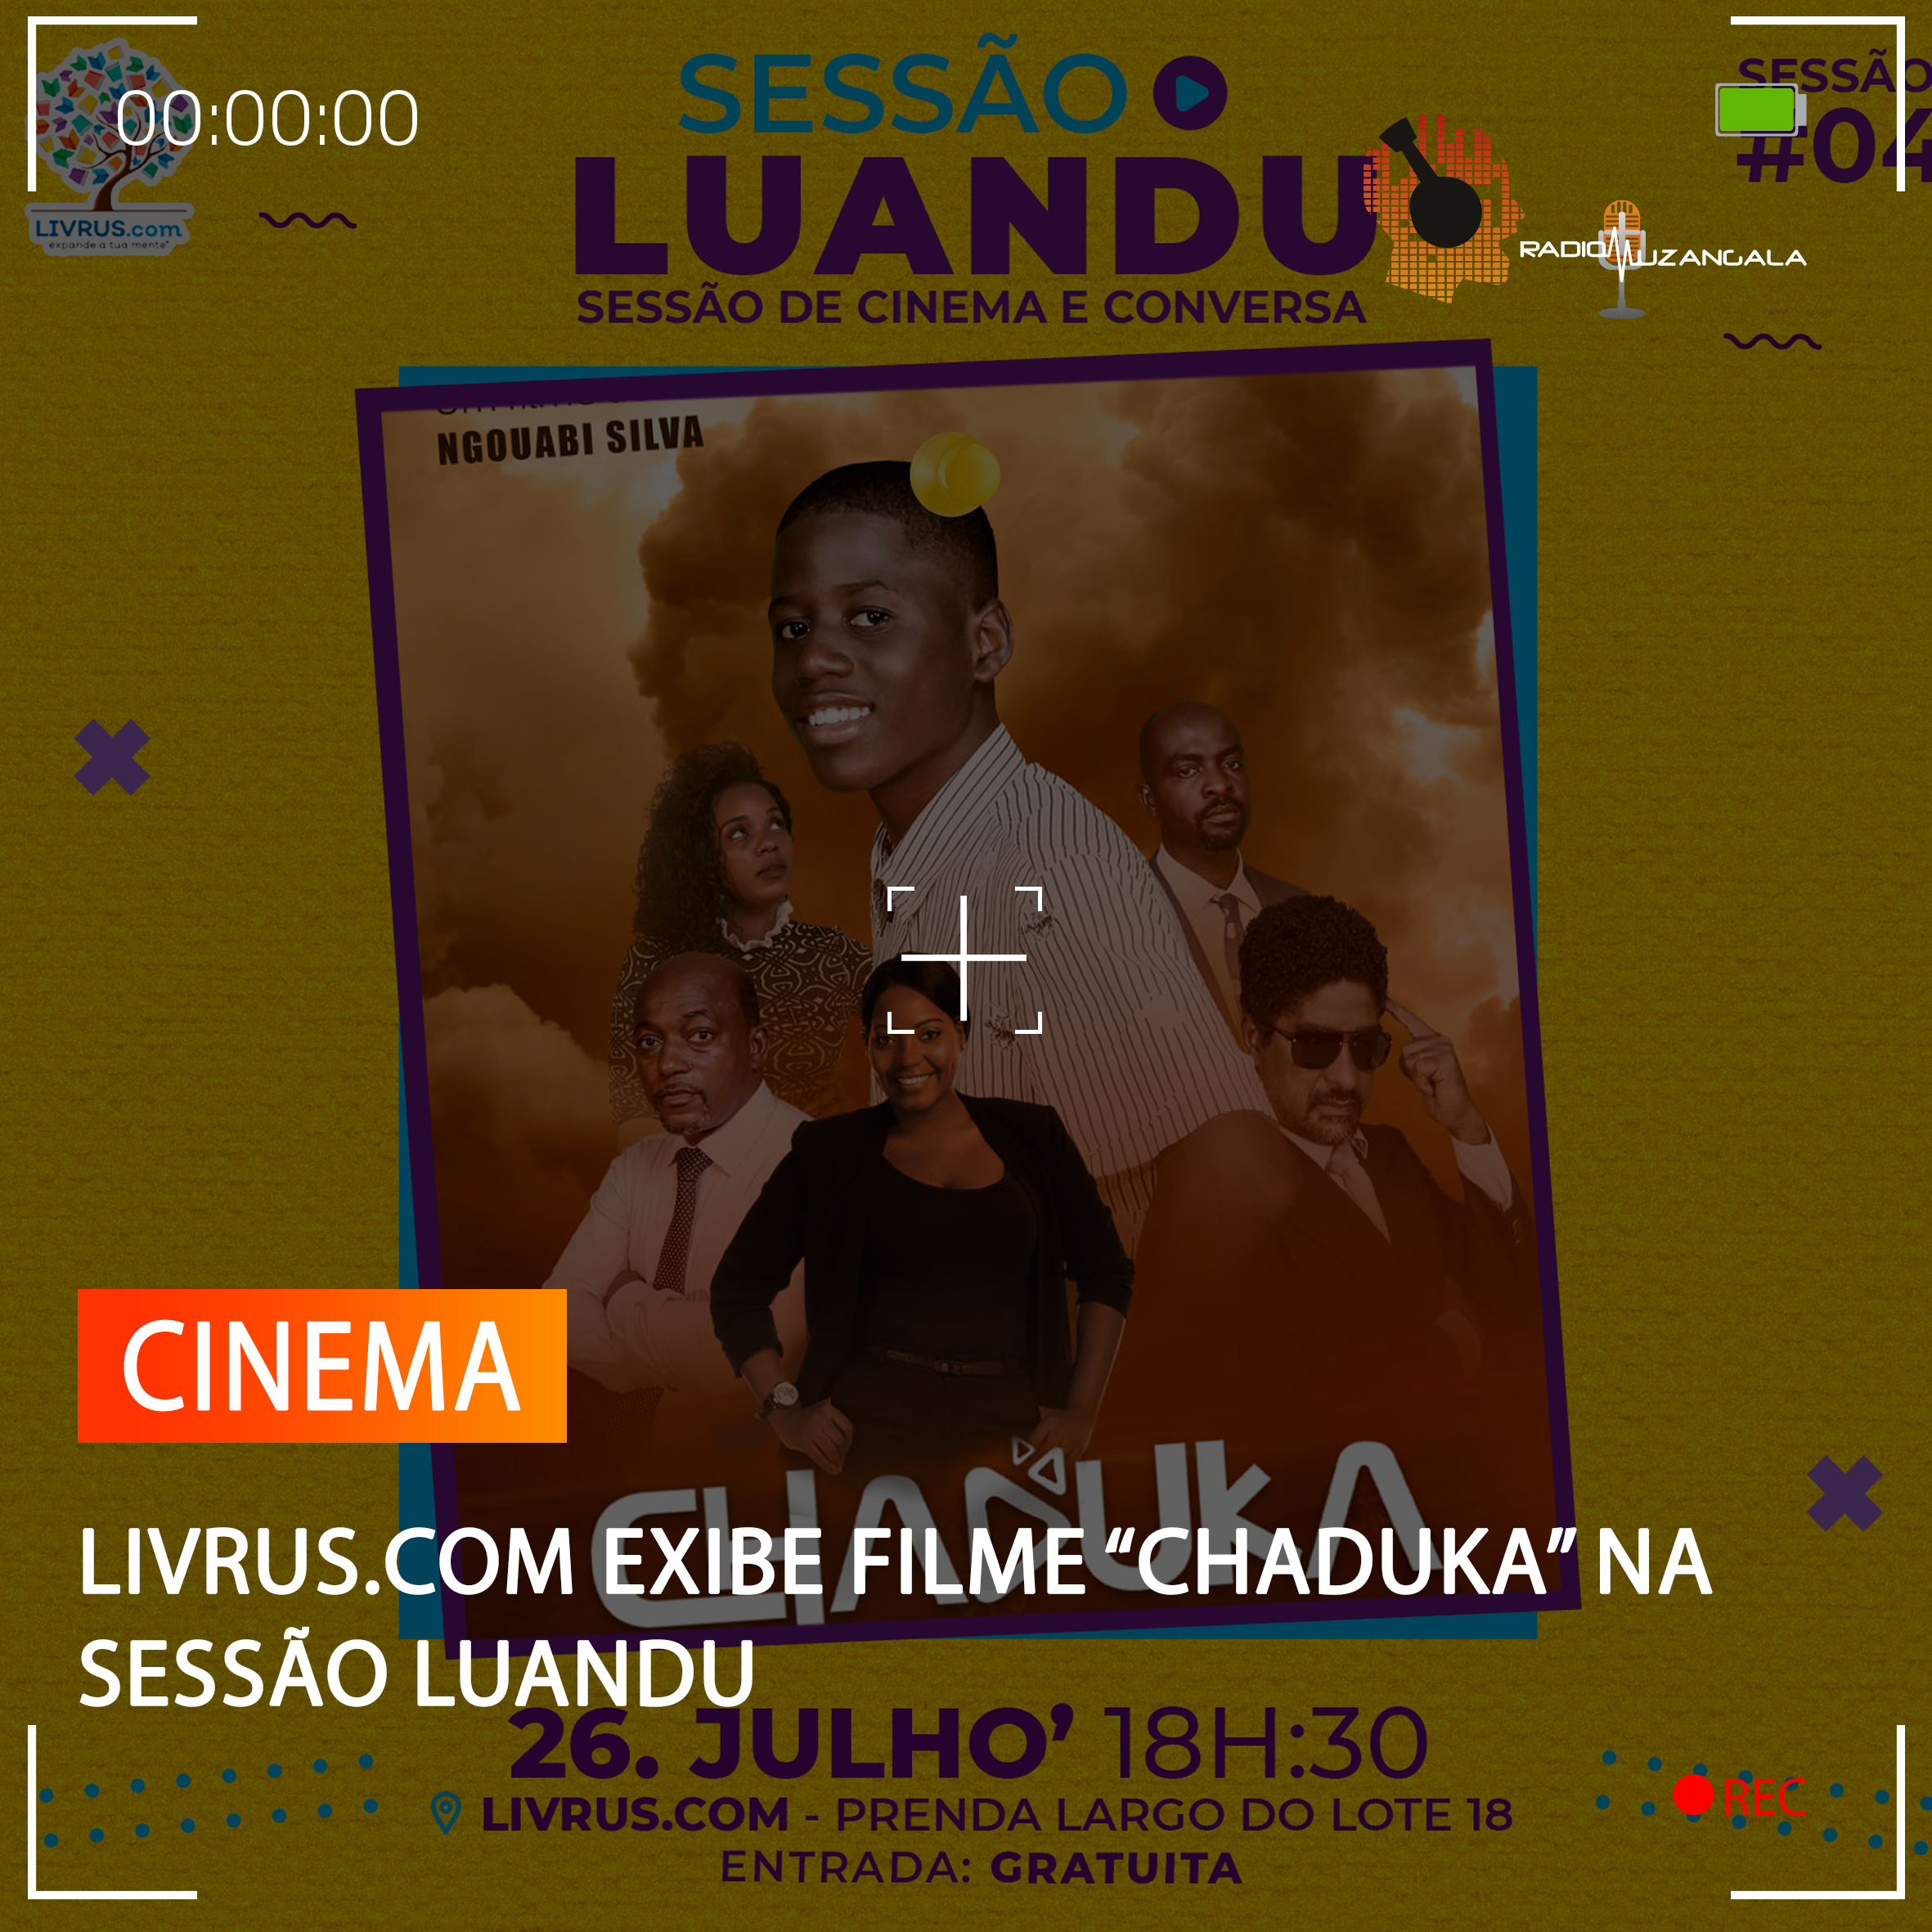  LIVRUS.COM EXIBE FILME “CHADUKA” NA SESSÃO LUANDU